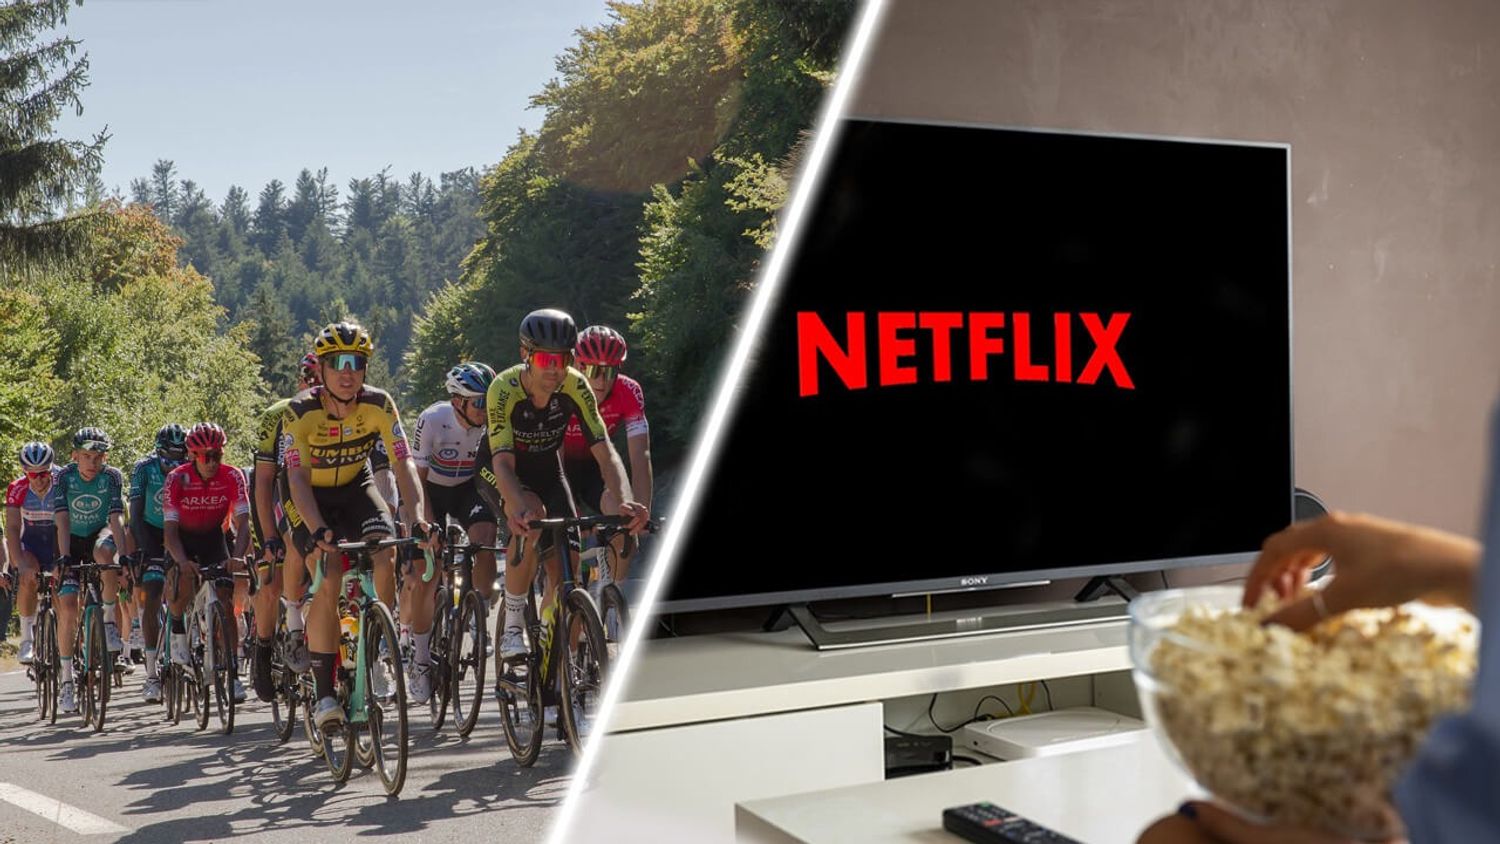 Le Tour de France : prochaine étape, Netflix !